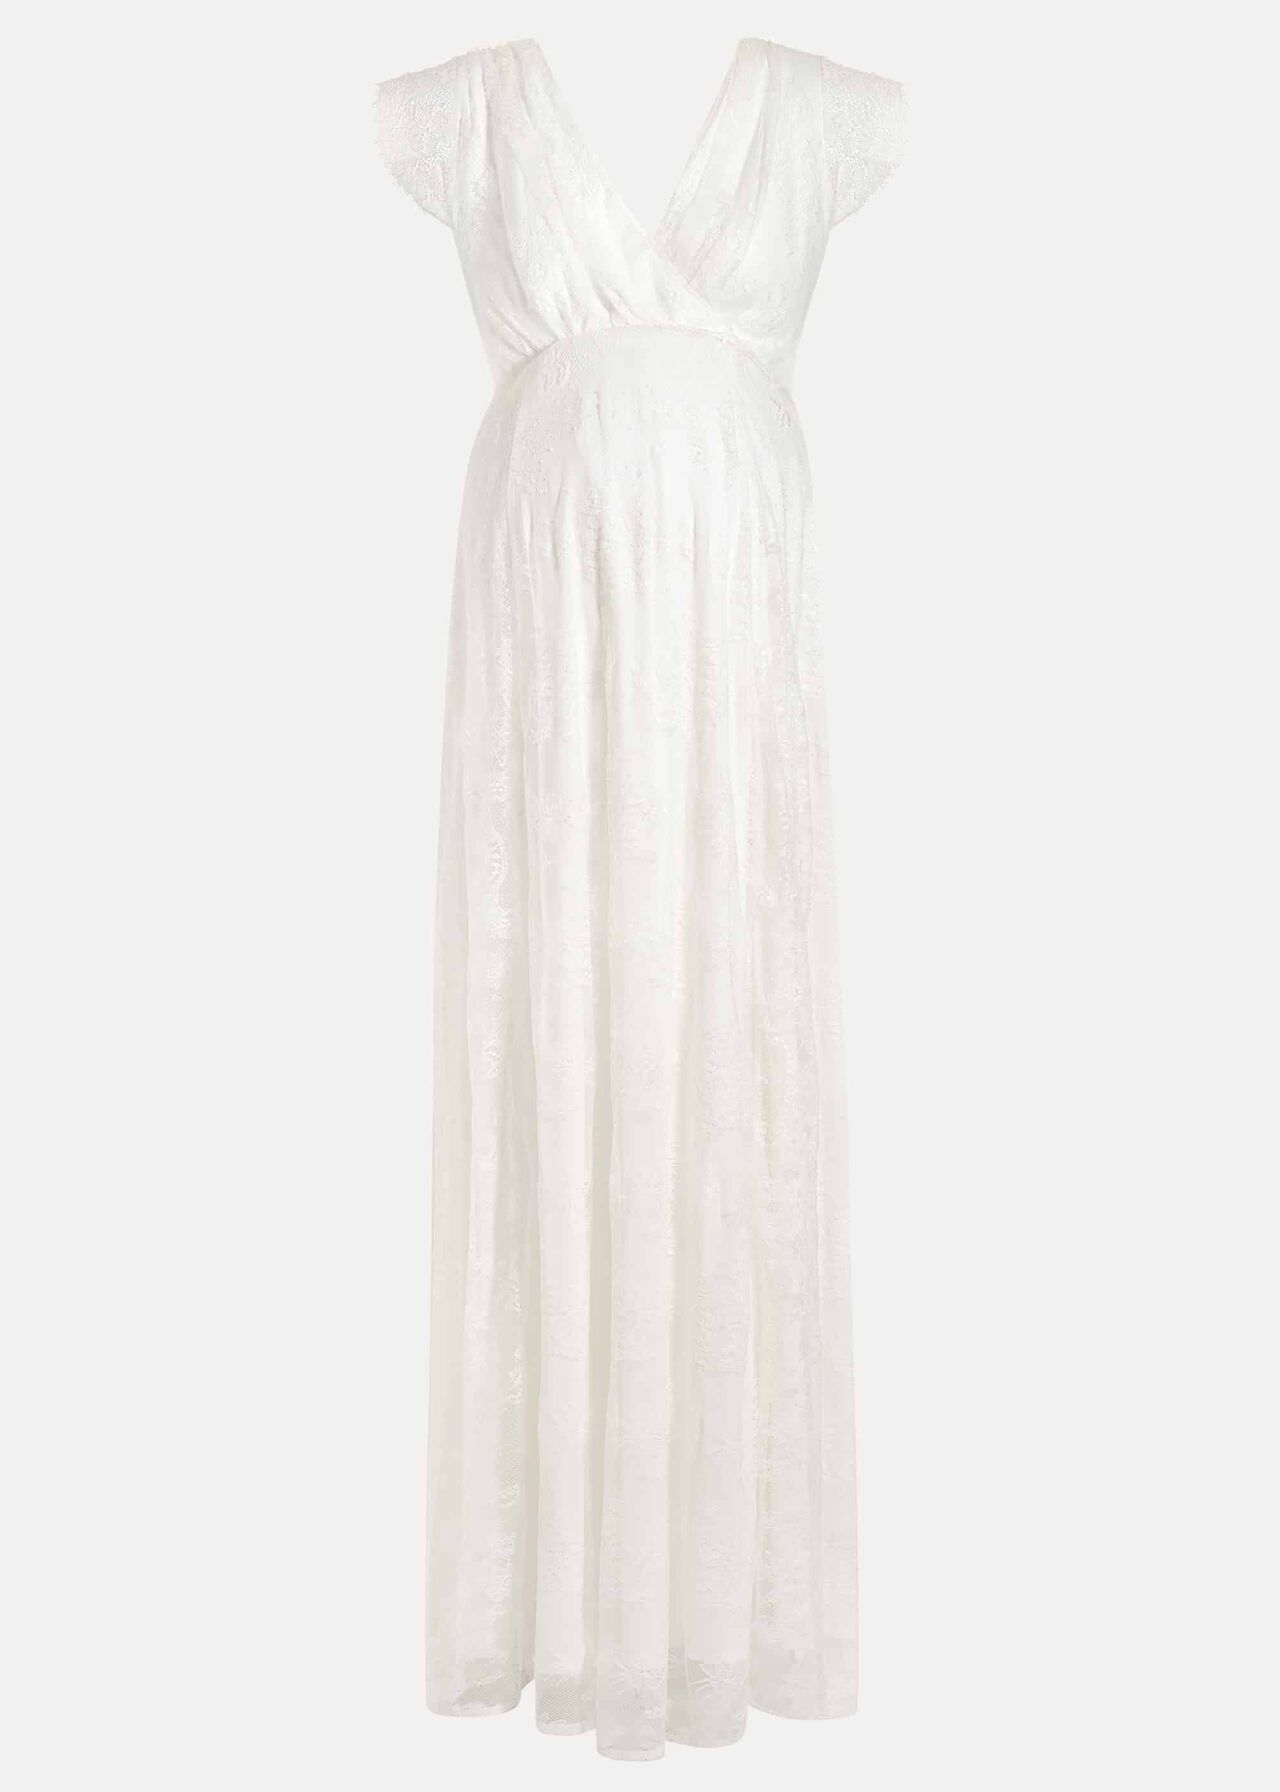 Vivienne Lace Wedding Dress